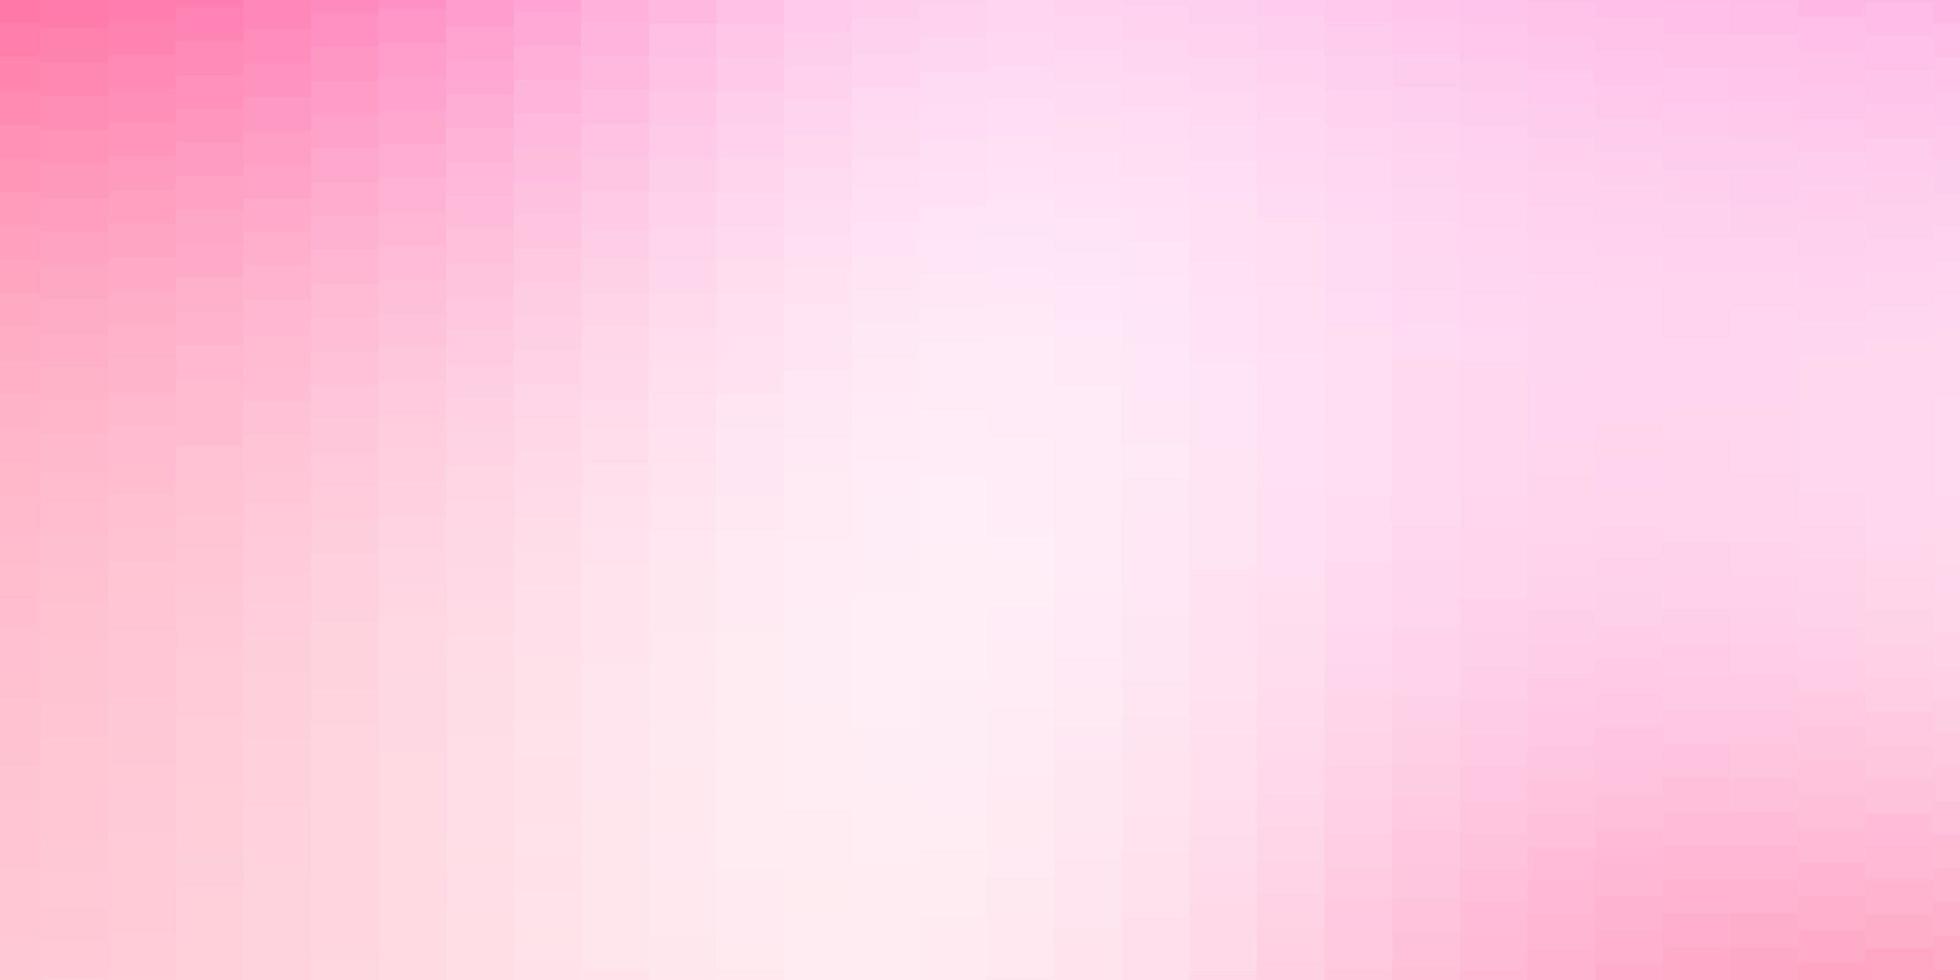 textura de vector de color rosa claro, amarillo en estilo rectangular.